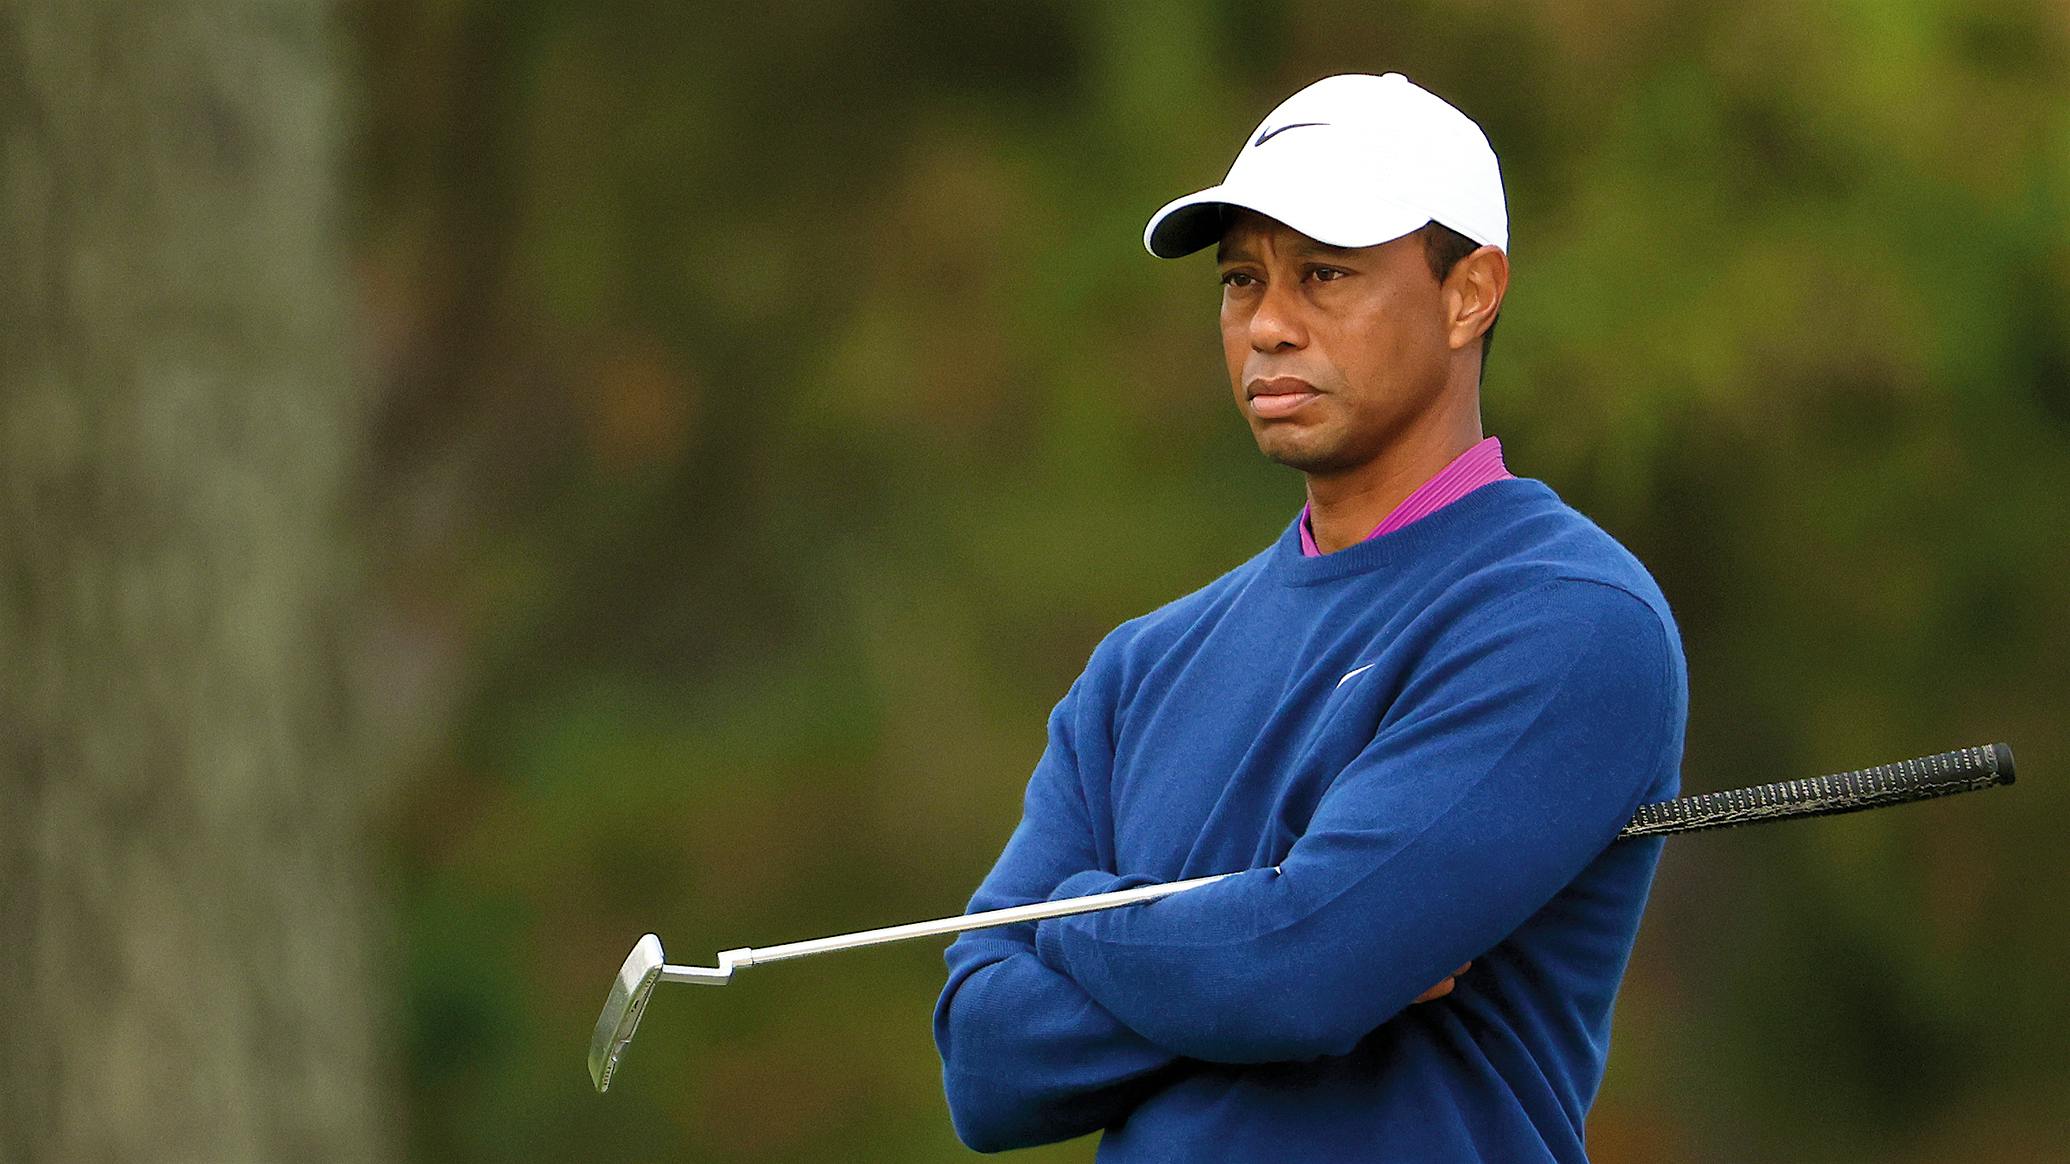 Let him be a kid': Tiger Woods concerned about Charlie's celebrity